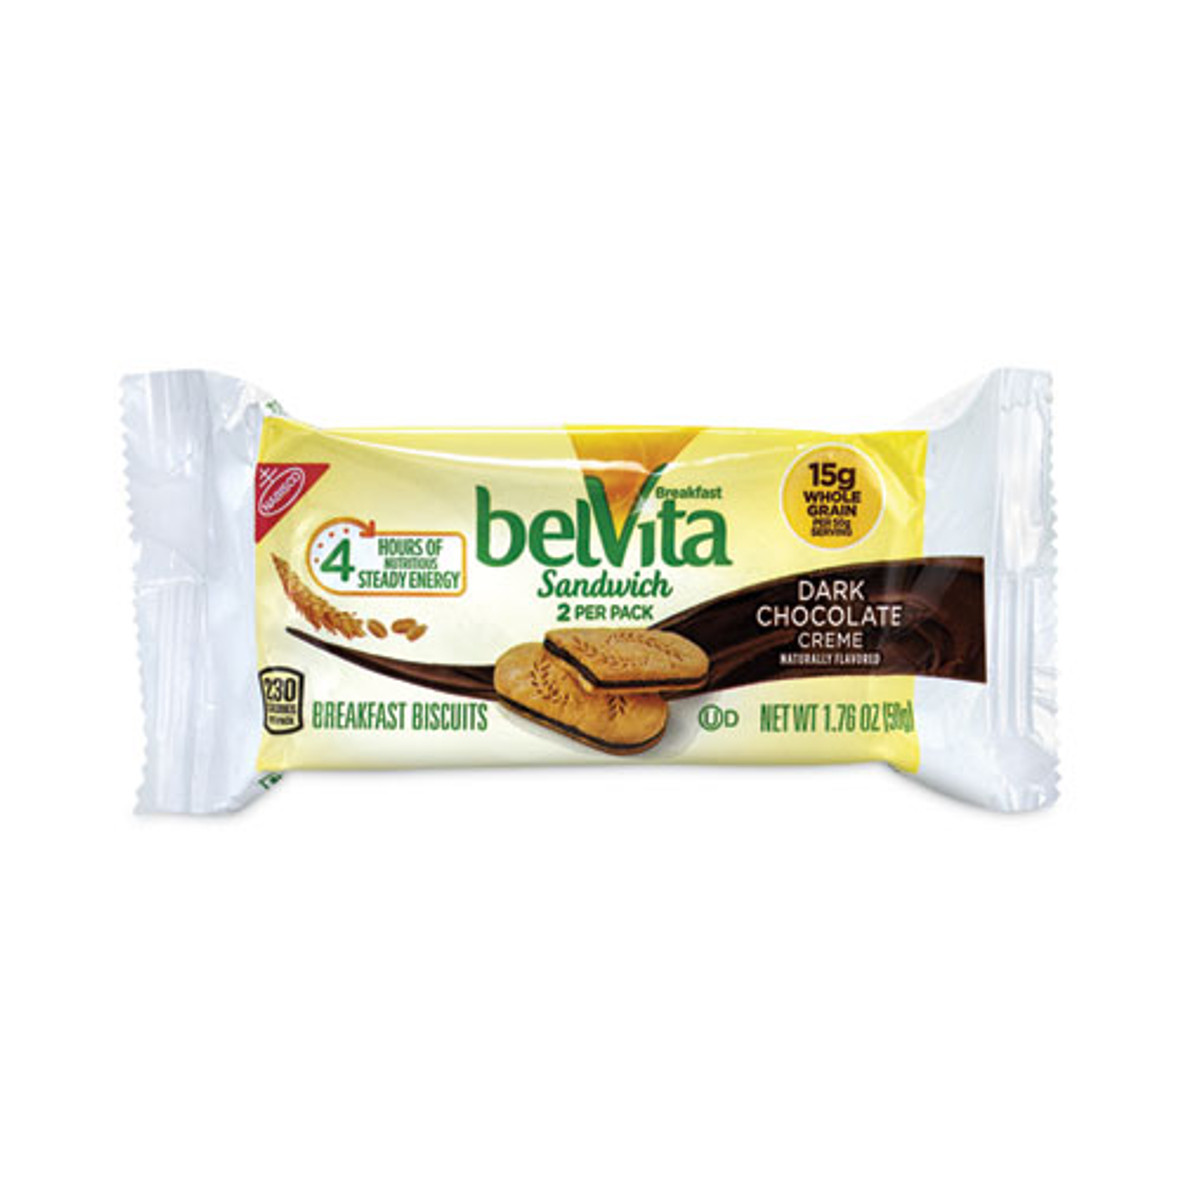 Belvita Breakfast Biscuits, Dark Chocolate Creme Breakfast Sandwich, 1.76 Oz Pack, 25 Pks/box